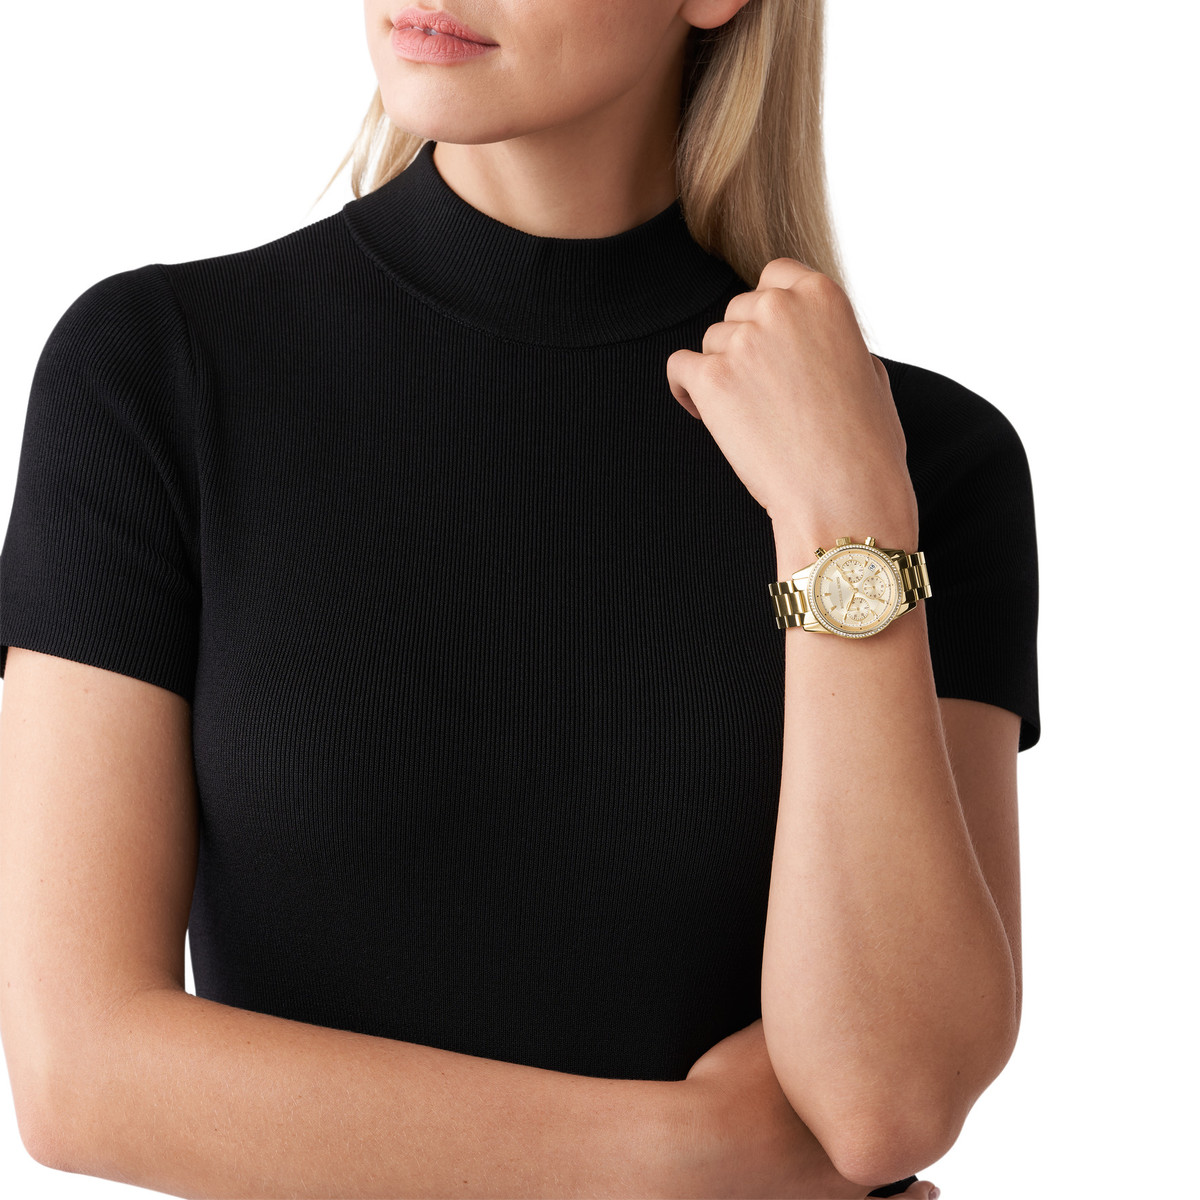 Montre MICHAEL KORS femme chronographe bracelet acier doré jaune - vue porté 1